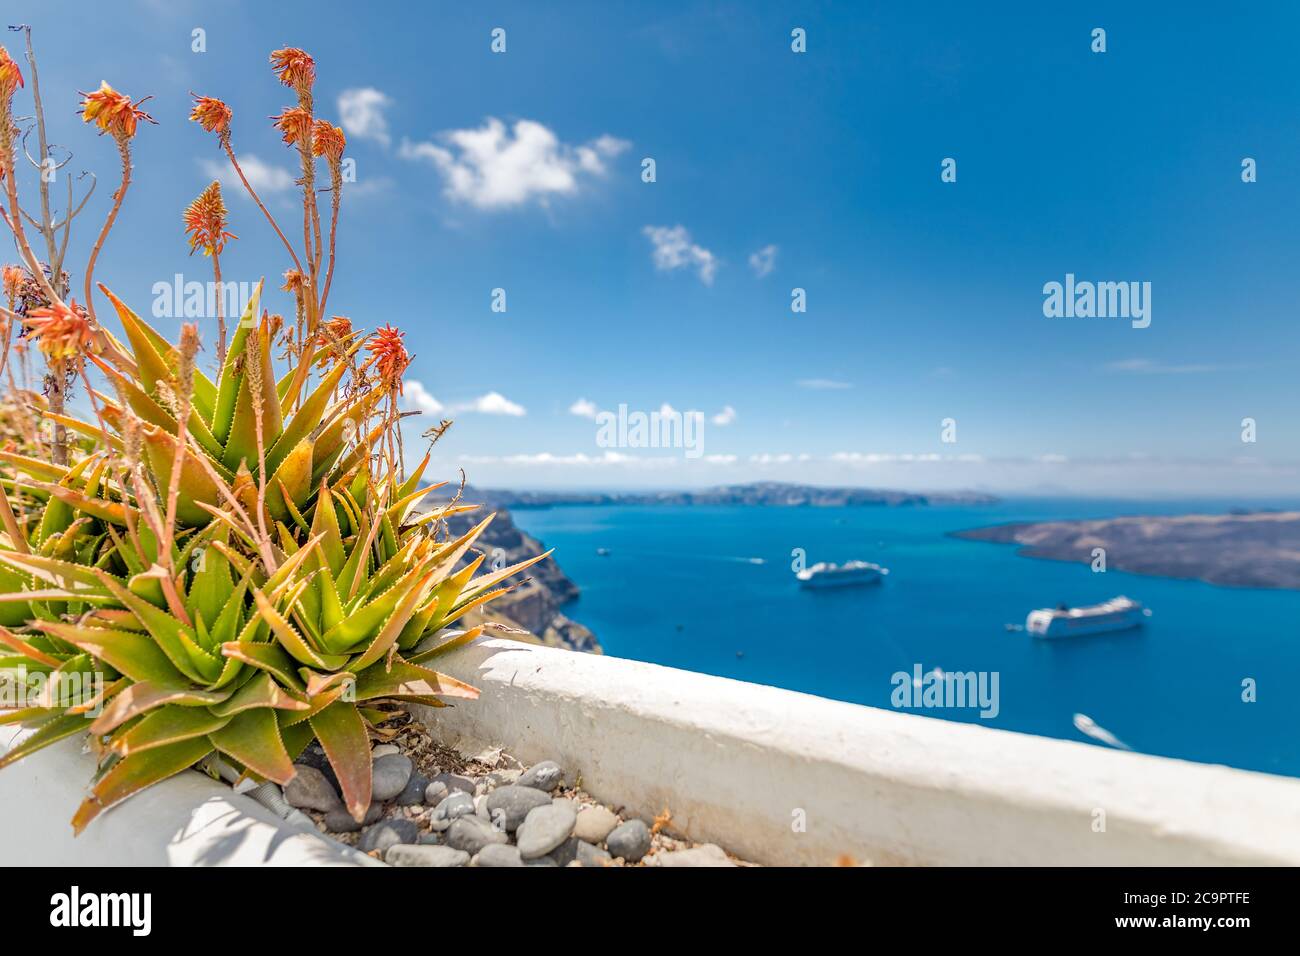 Vue paisible à Santorin, Grèce avec architecture blanche et fleurs roses, bateaux de croisière, ambiance méditerranéenne d'été, vacances et arrière-plan de voyage. Banque D'Images